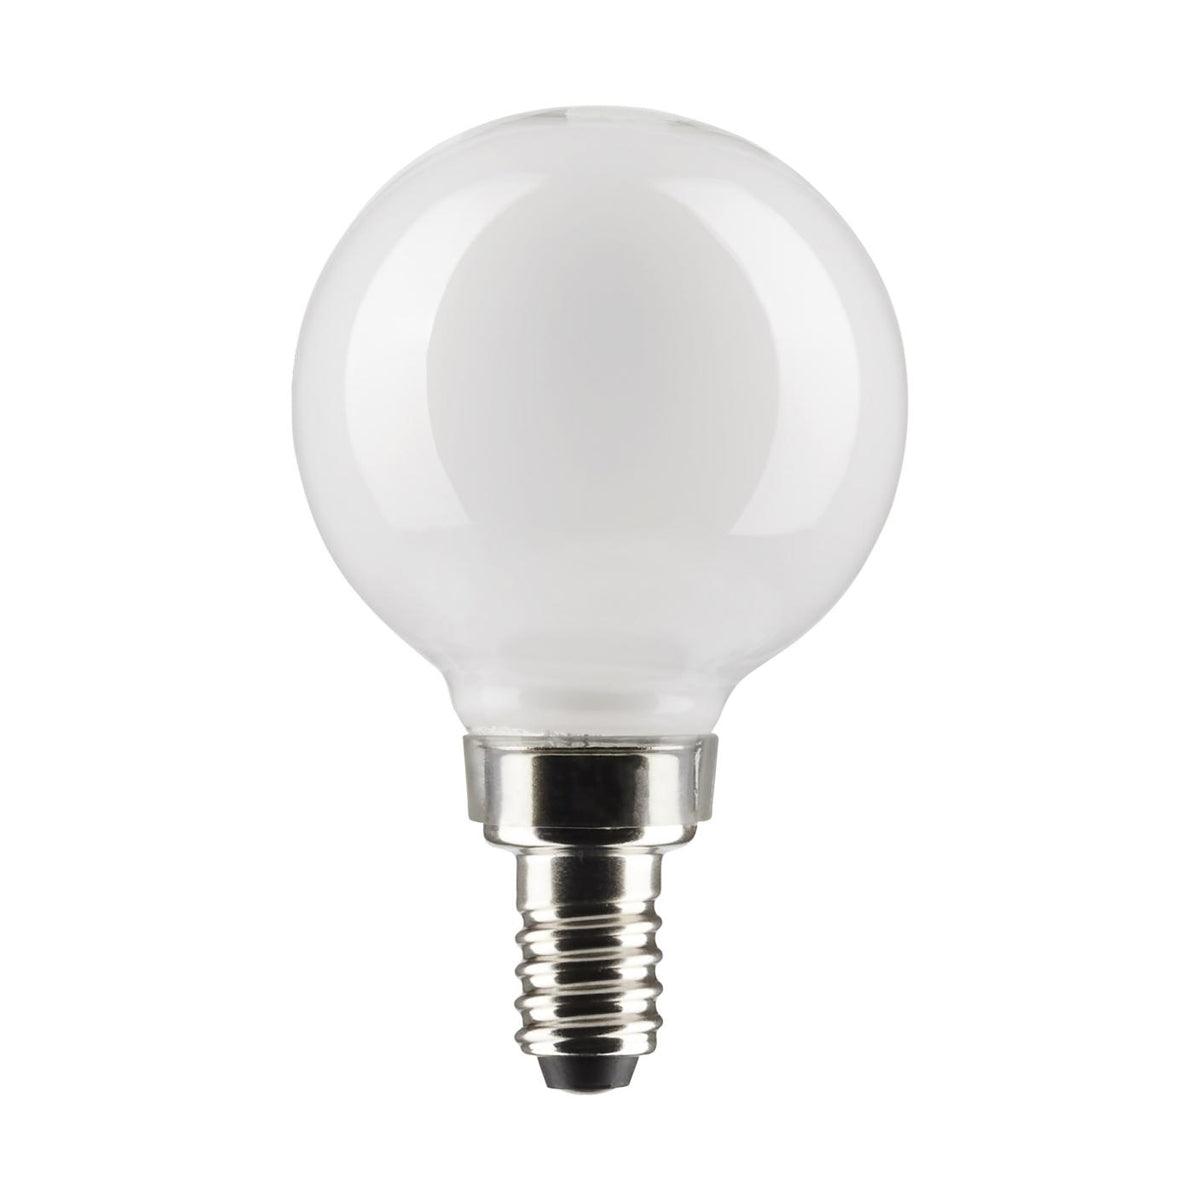 G16.5 LED Globe Bulb, 6 Watt, 500 Lumens, 2700K, E12 Candelabra Base, Frosted Finish, Pack Of 2